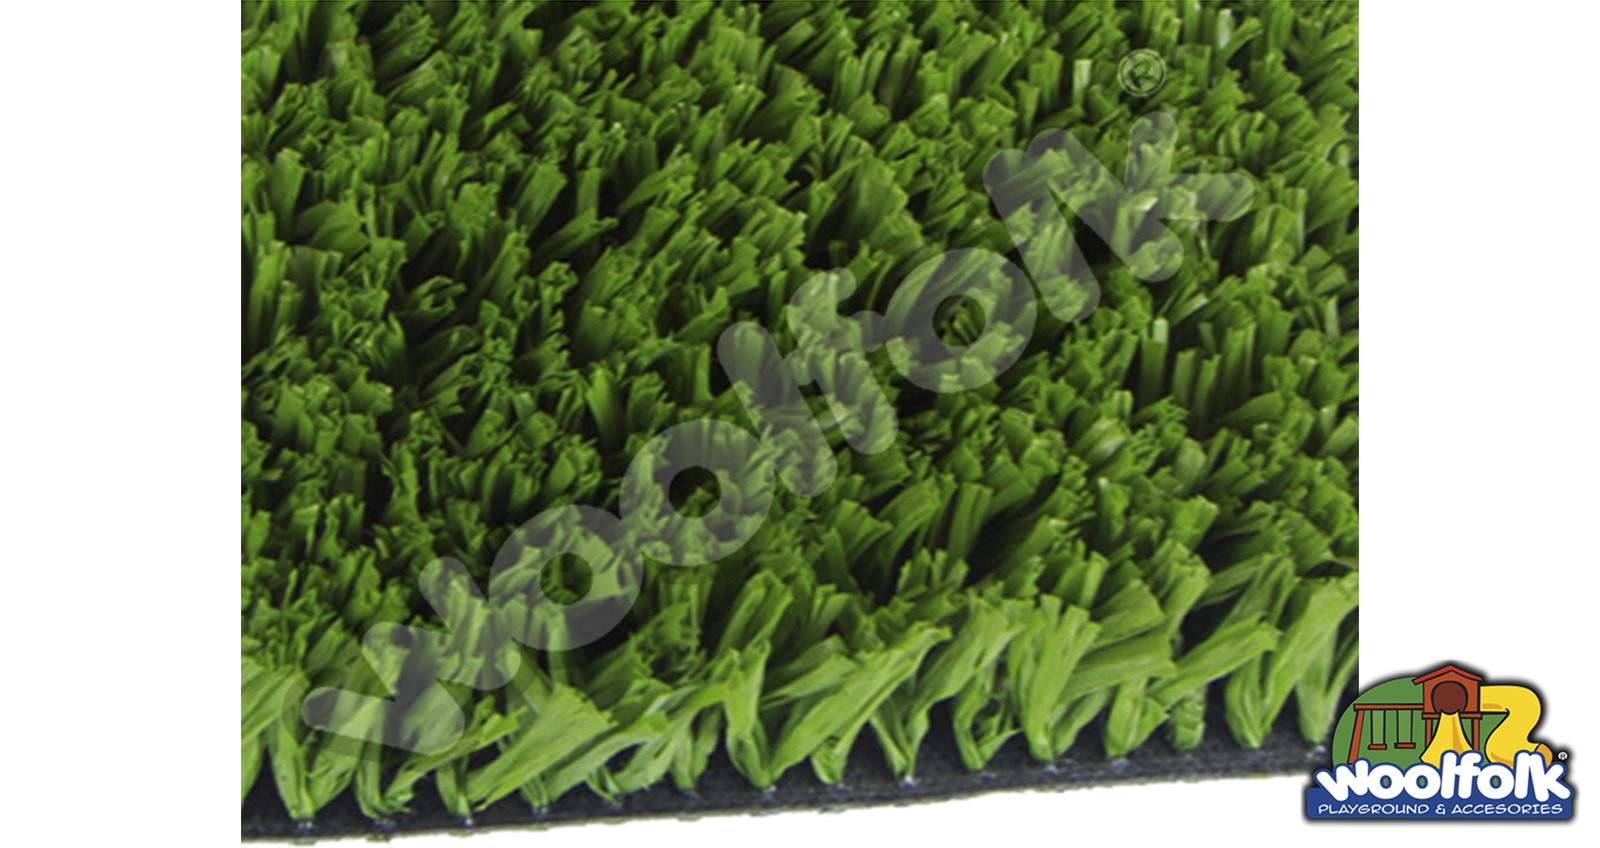 Pasto Artificial Deportivo woolfolk
Cubierta inferior (Backing): Poliuretano distribuido uniformemente entre las cerdas. Modelo: gra005-pasto-artificial-decorativo